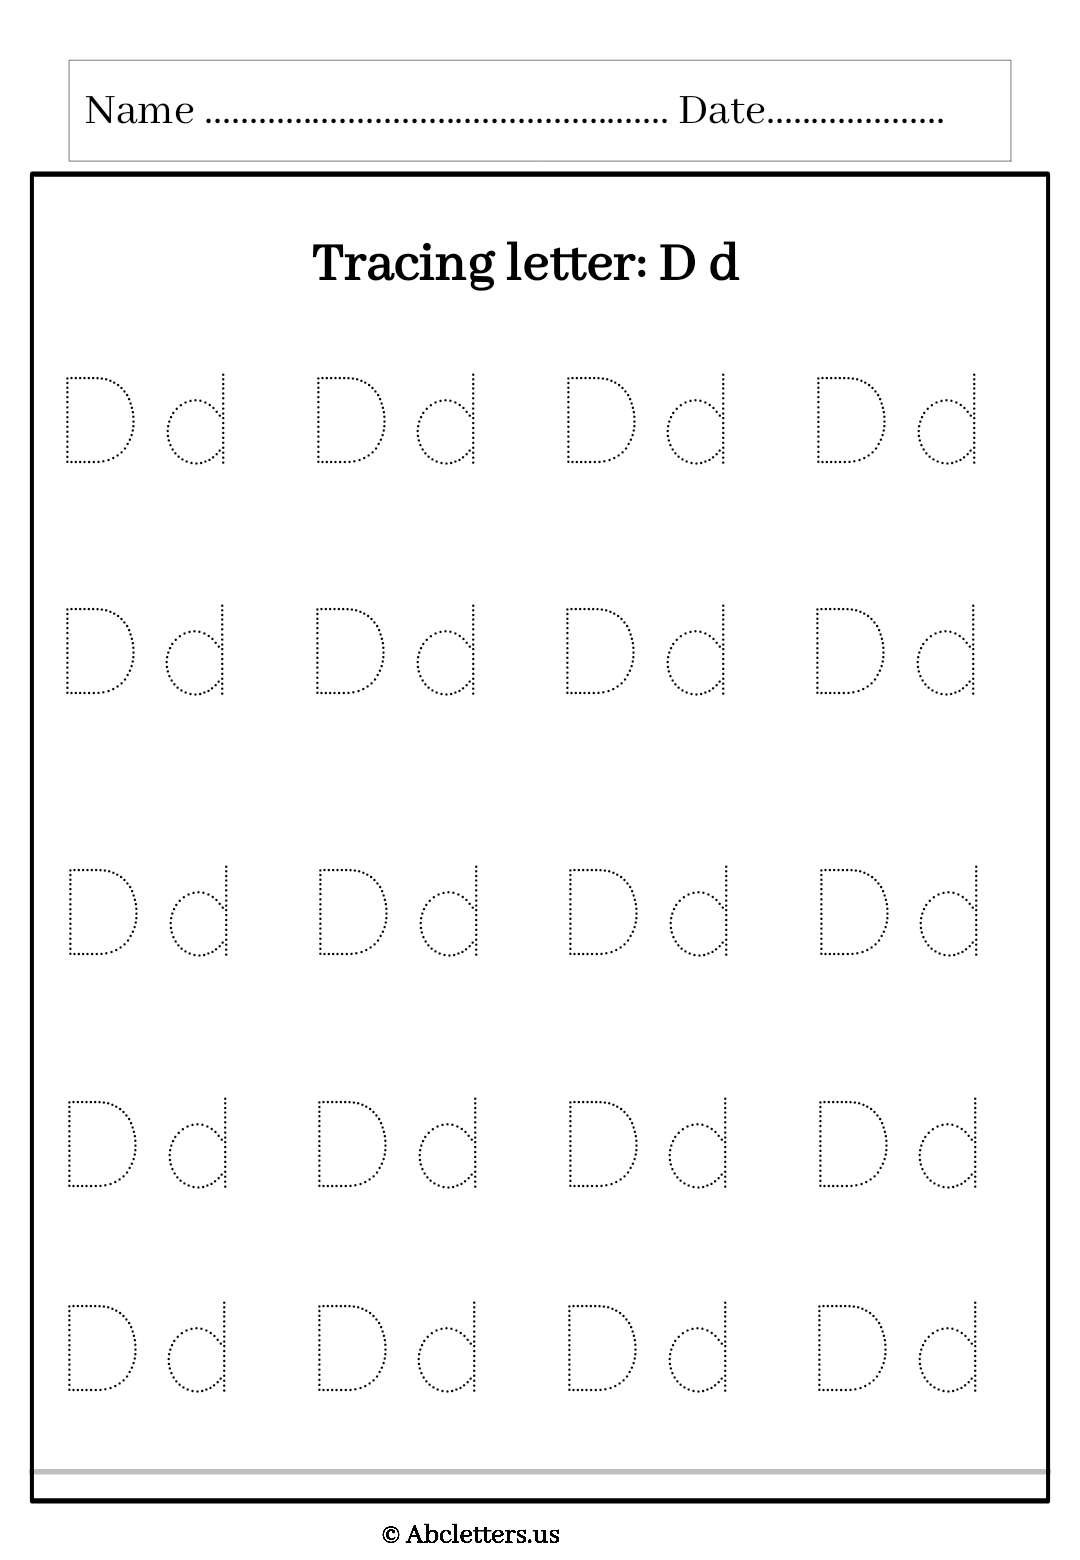 Letter D d Tracing Worksheets Free For Kindergarten